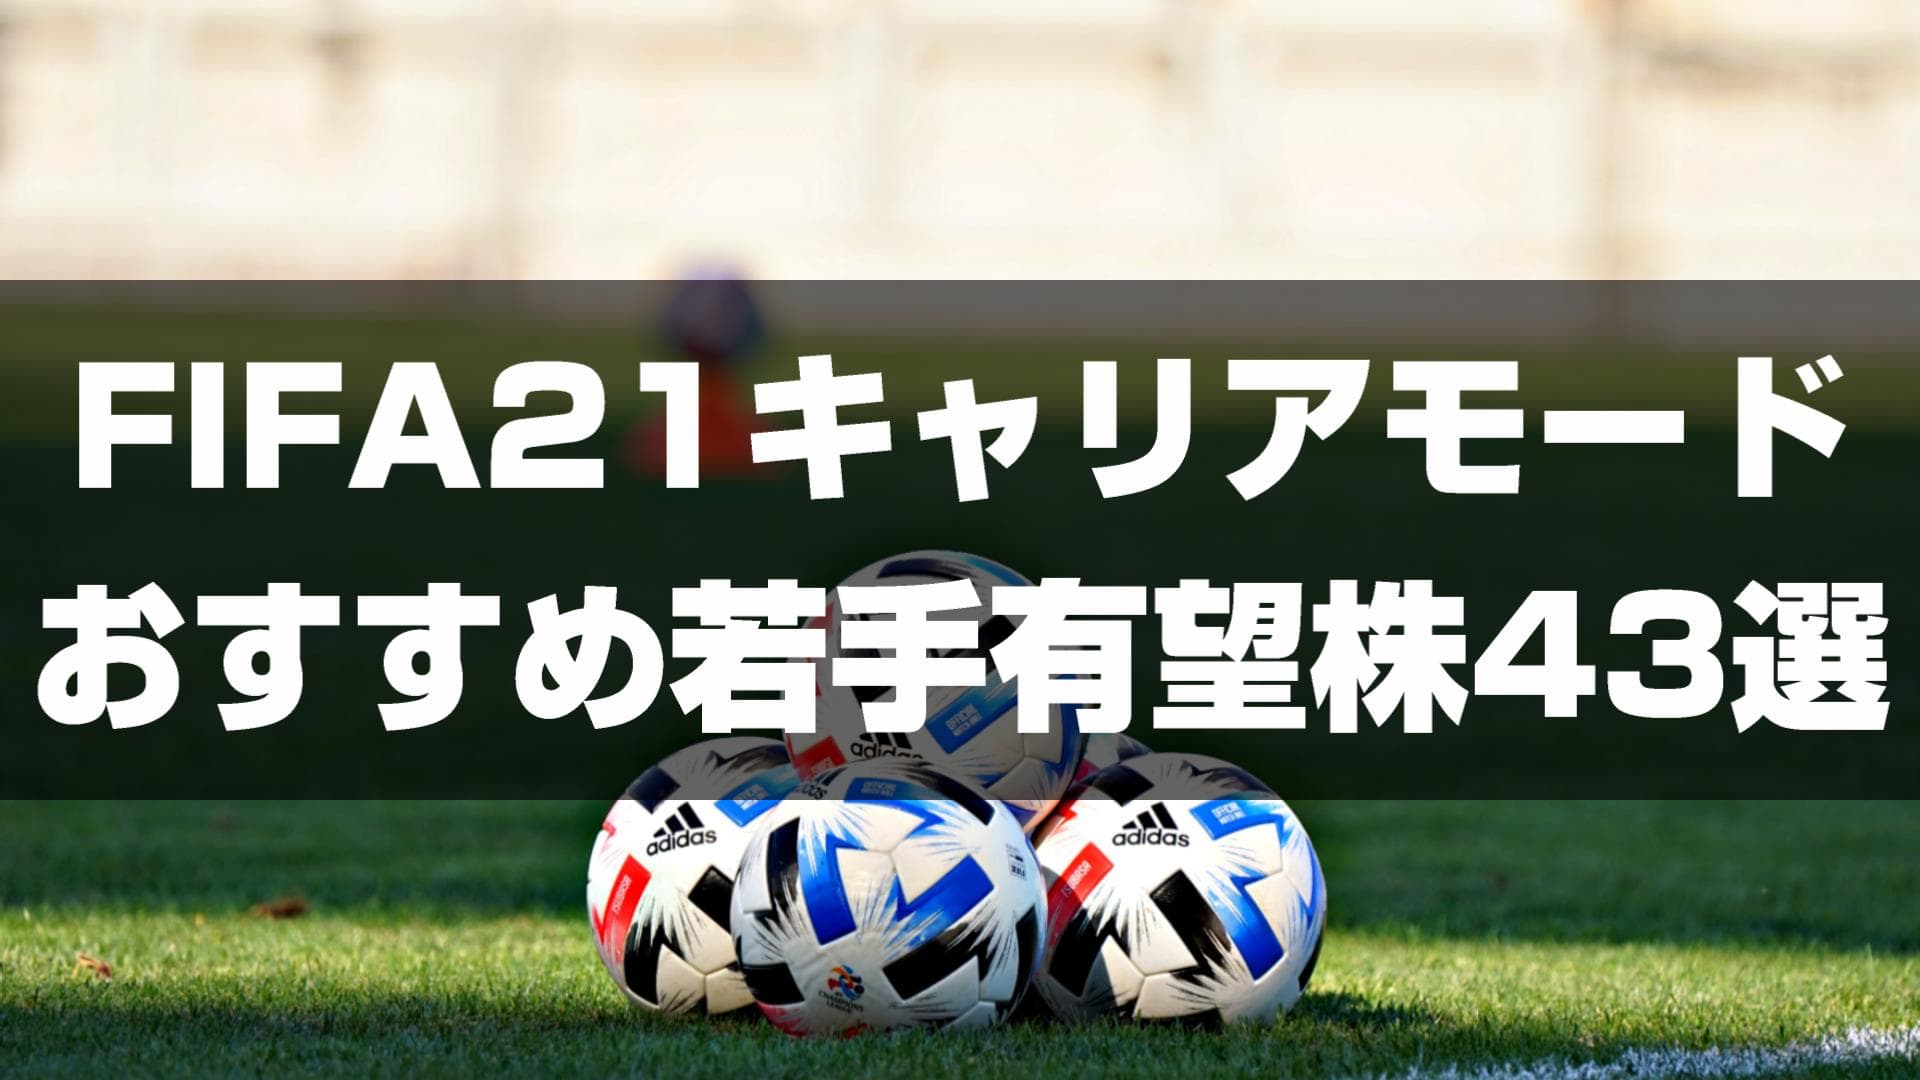 Fifa21キャリアモード 18歳以下のおすすめ若手有望株43選をポジション別で紹介 Yasublog